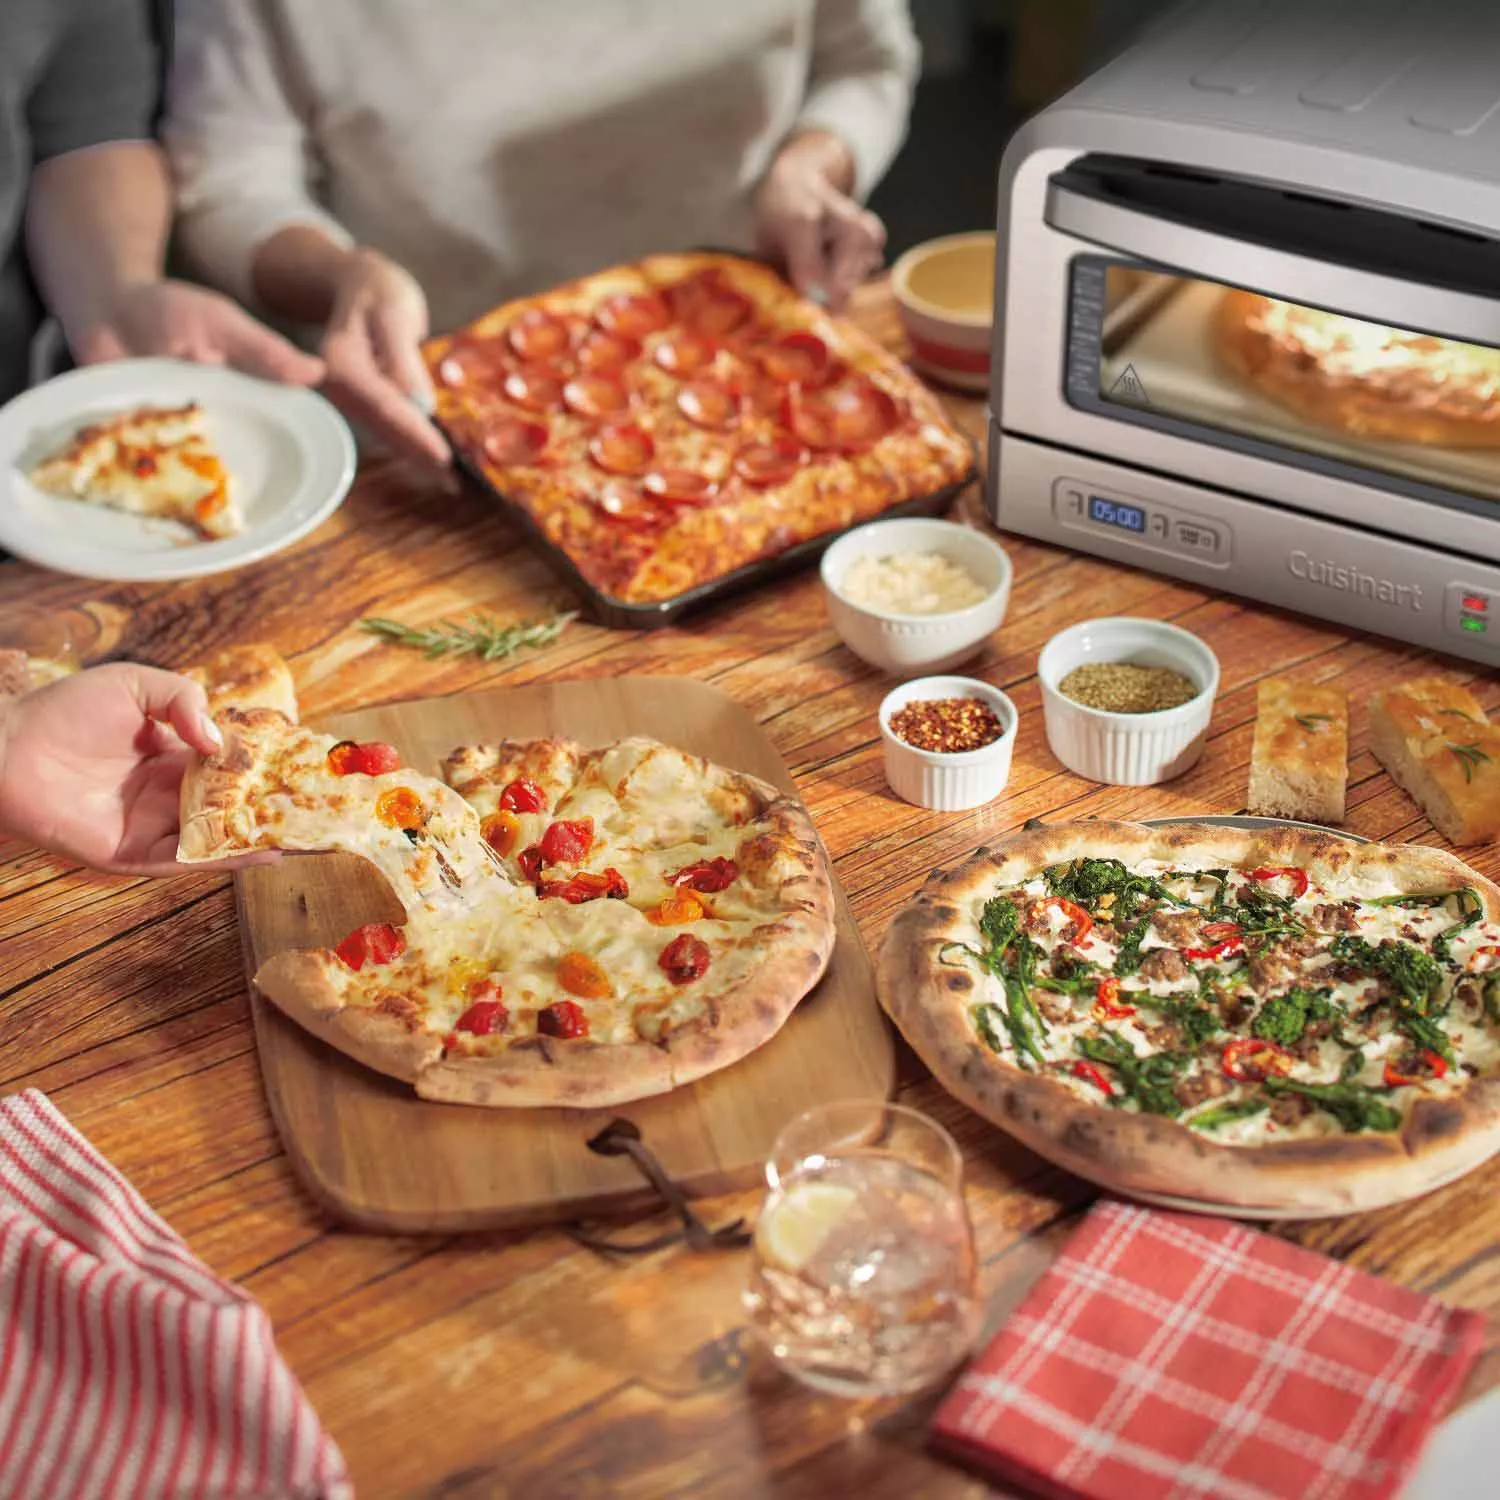 Breville Pizzaiolo Smart Oven 